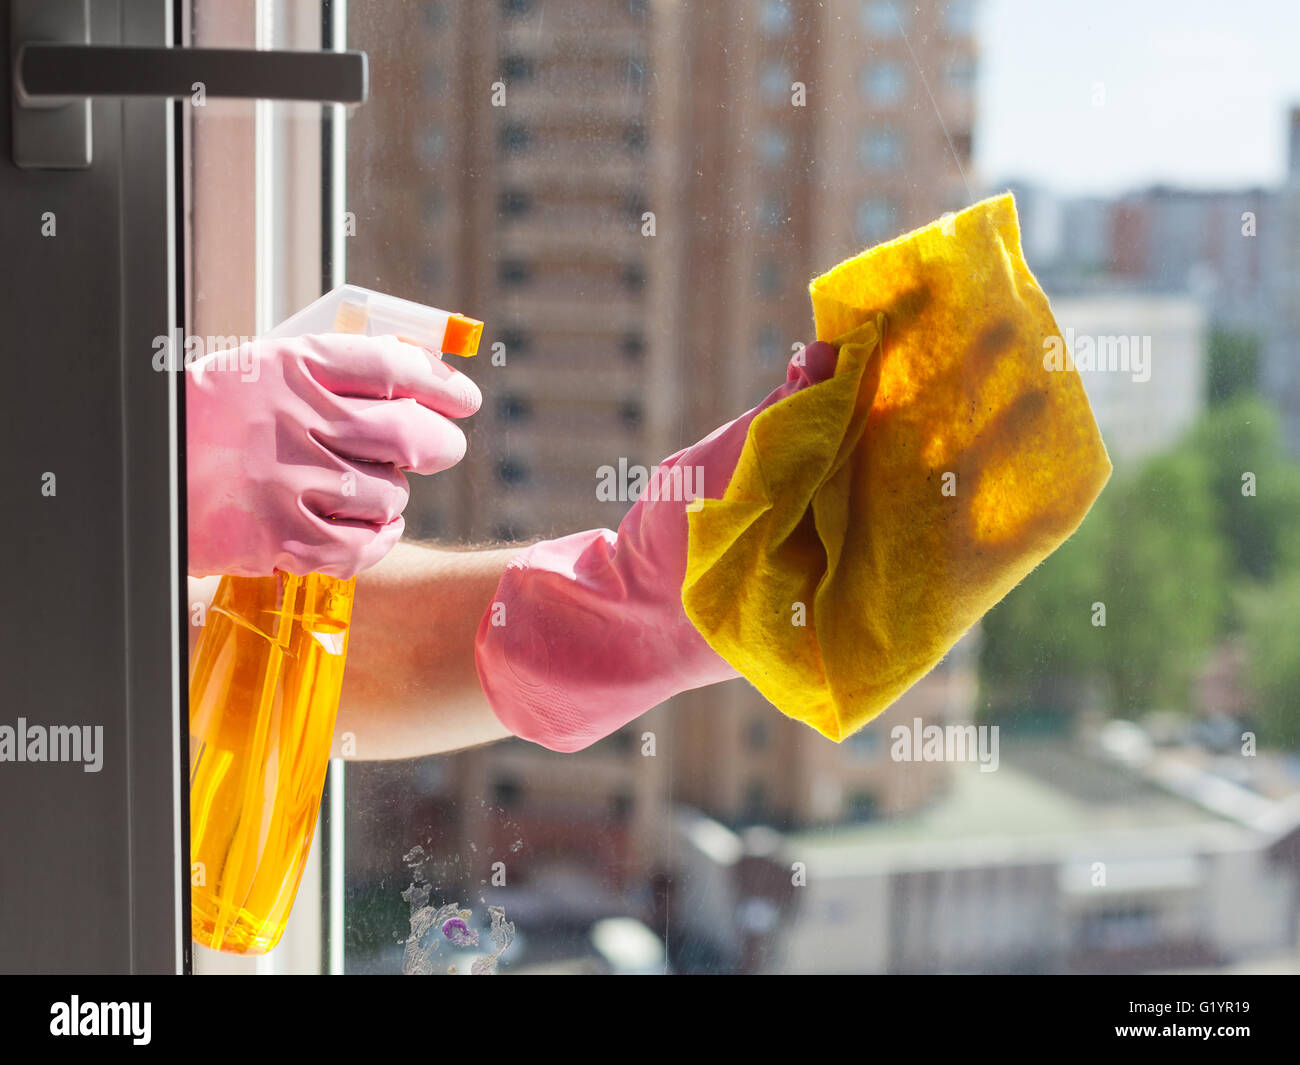 Waschen-home-Fenster - Waschmaschine wäscht Fensterglas mit Waschmittel im Appartementhaus Stockfoto